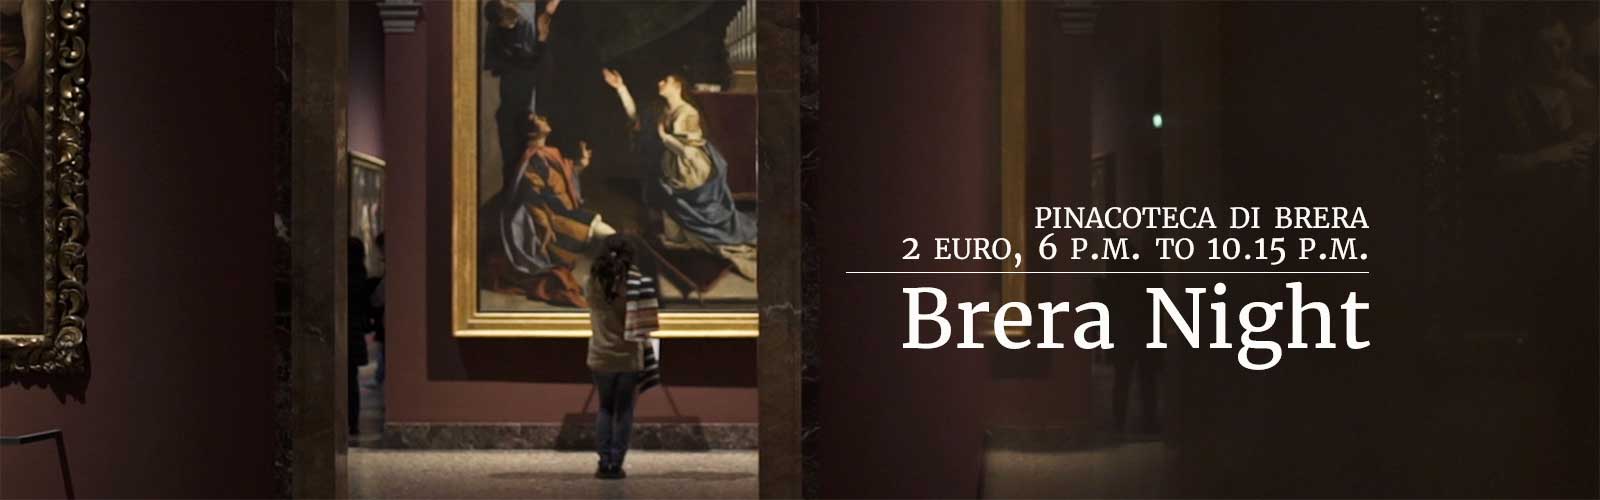 Brera nights at 2 euro